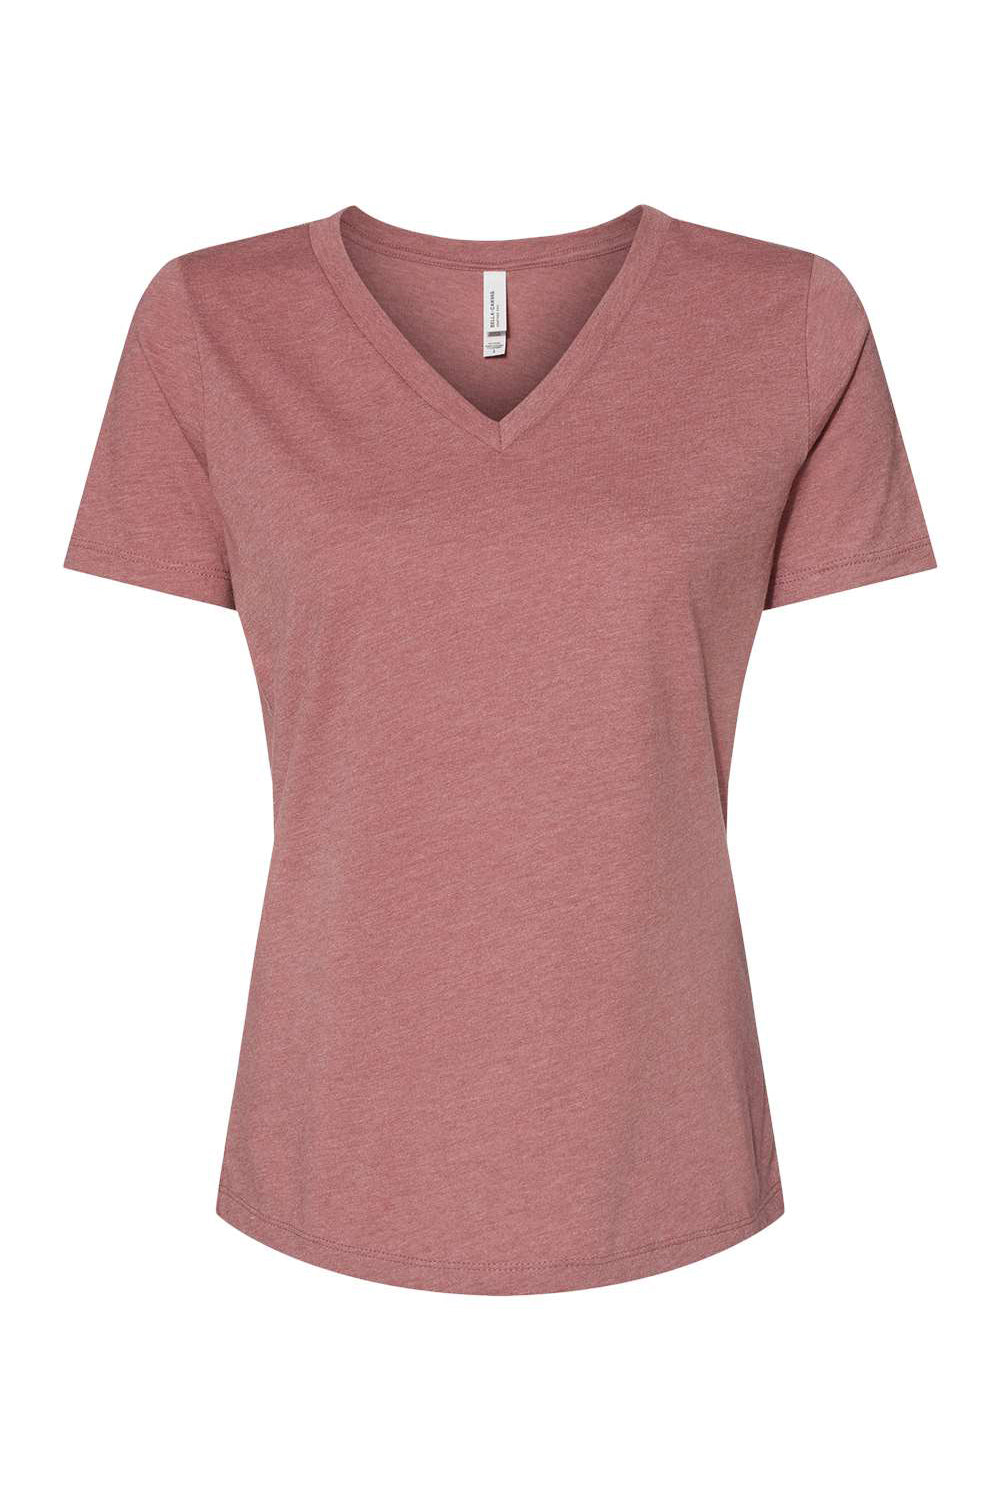 Bella + Canvas BC6405CVC Womens CVC Short Sleeve V-Neck T-Shirt Heather Mauve Flat Front